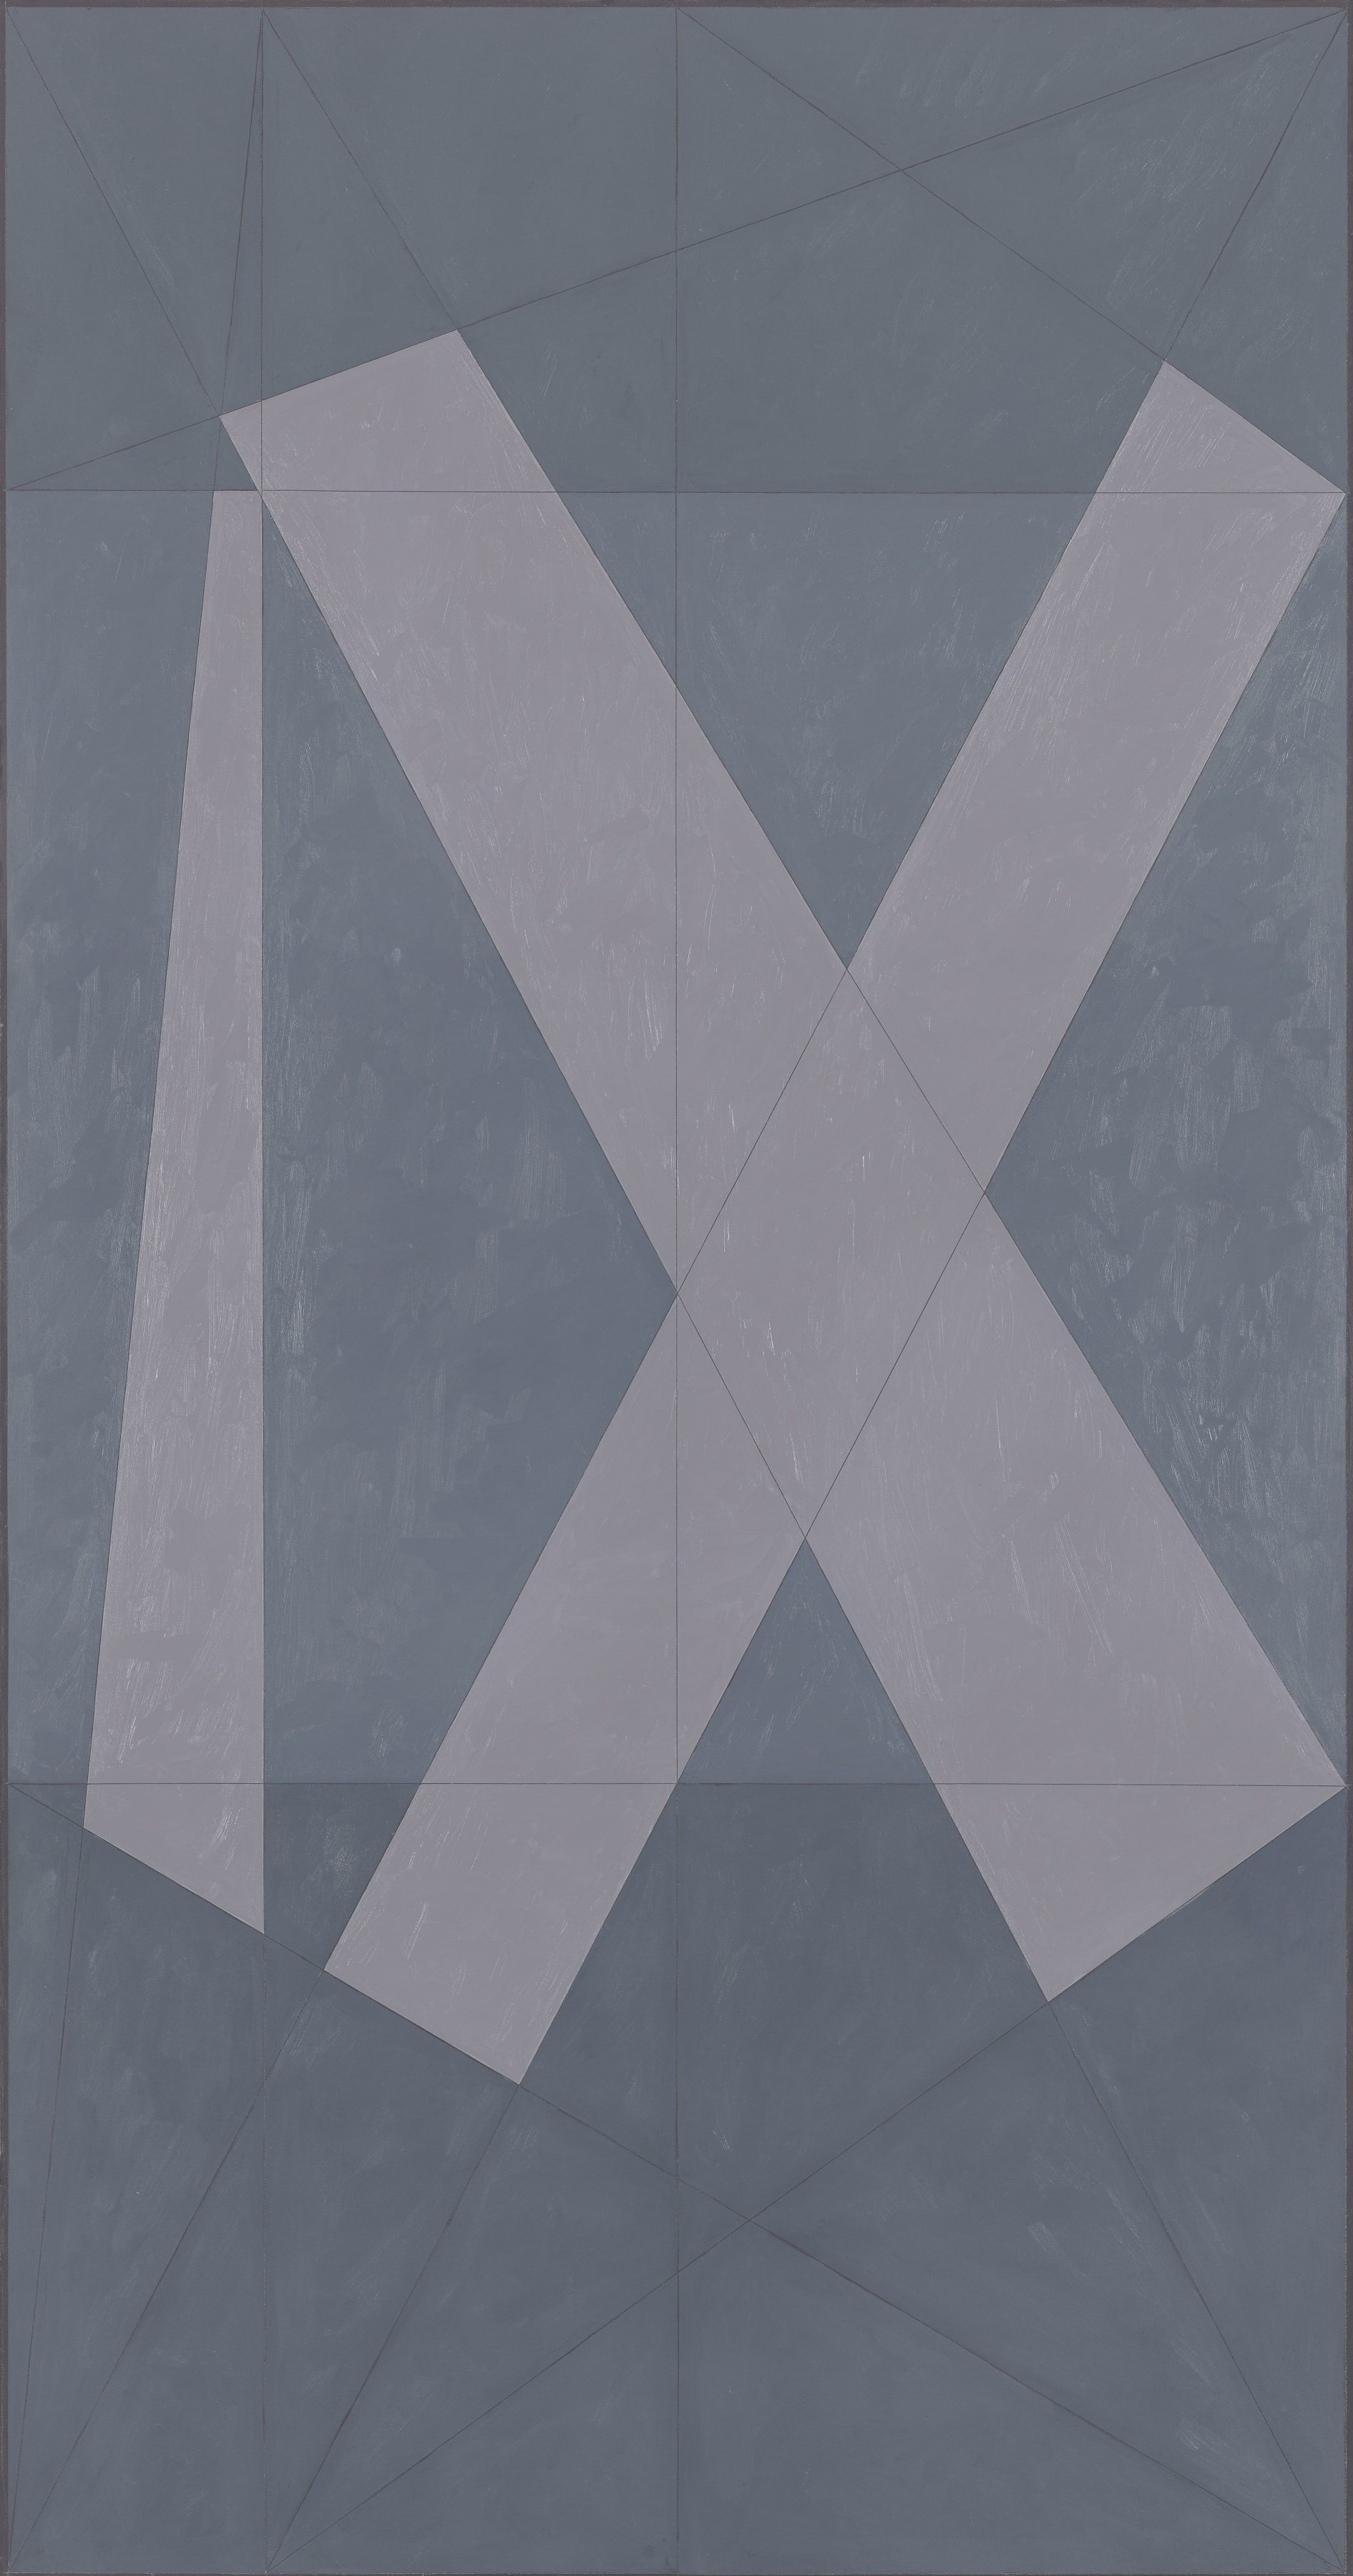 Roman IX, 1981, Oil on canvas